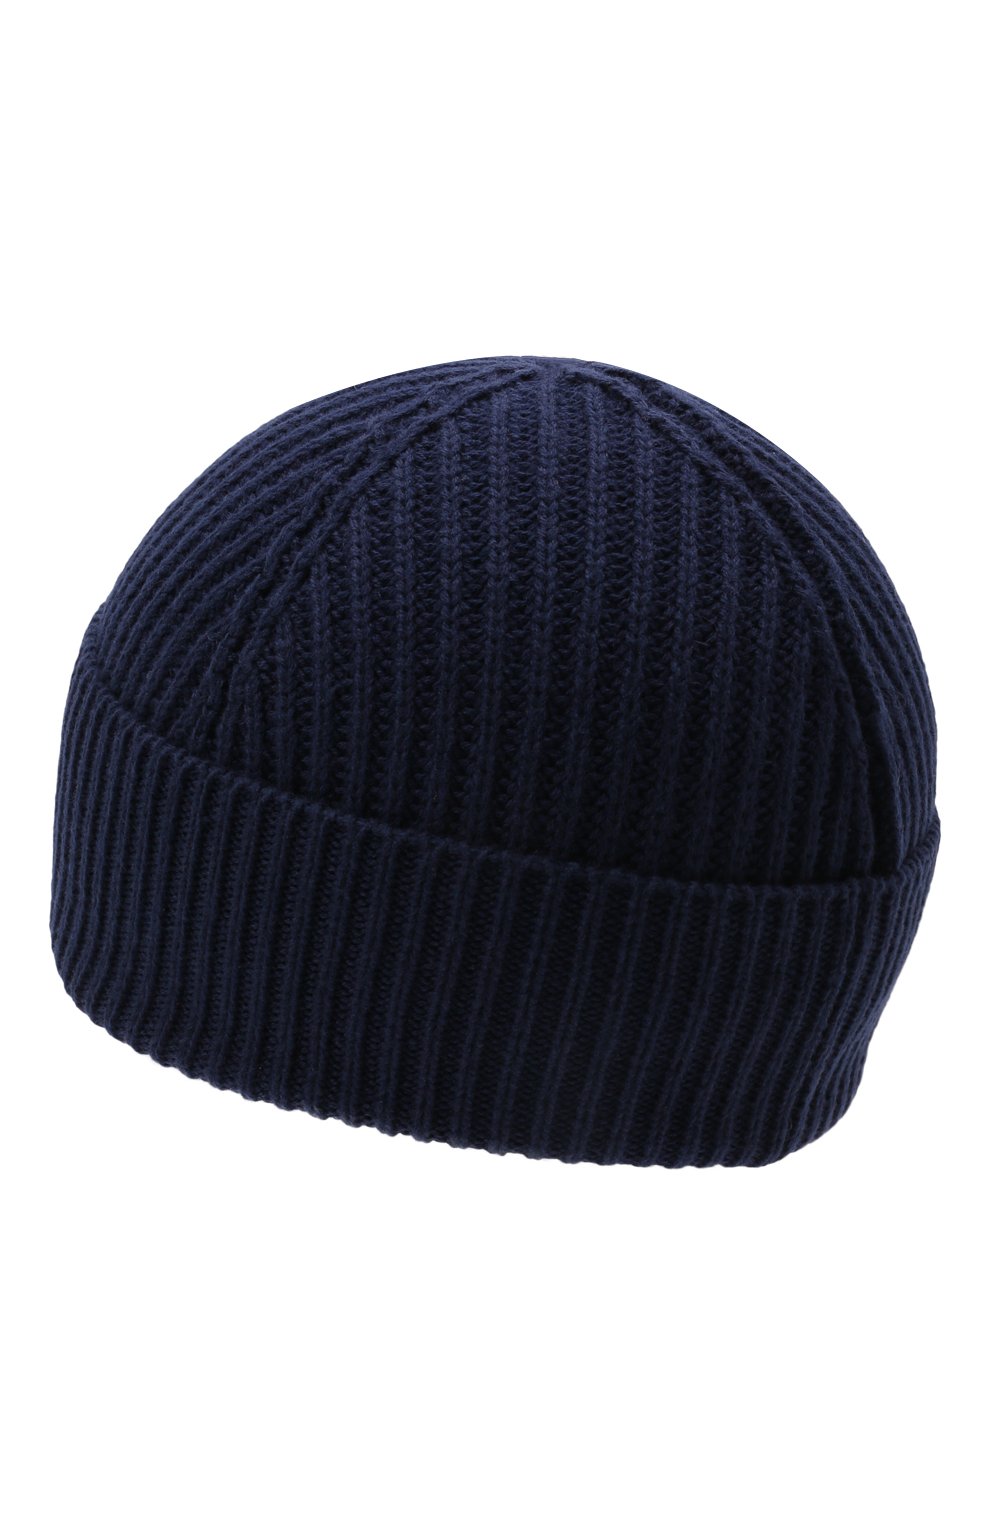 Детского шапка из шерсти и хлопка DSQUARED2 темно-синего цвета, арт. DQ0452-D00WC | Фото 2 (Материал: Текстиль, Шерсть, Хлопок)